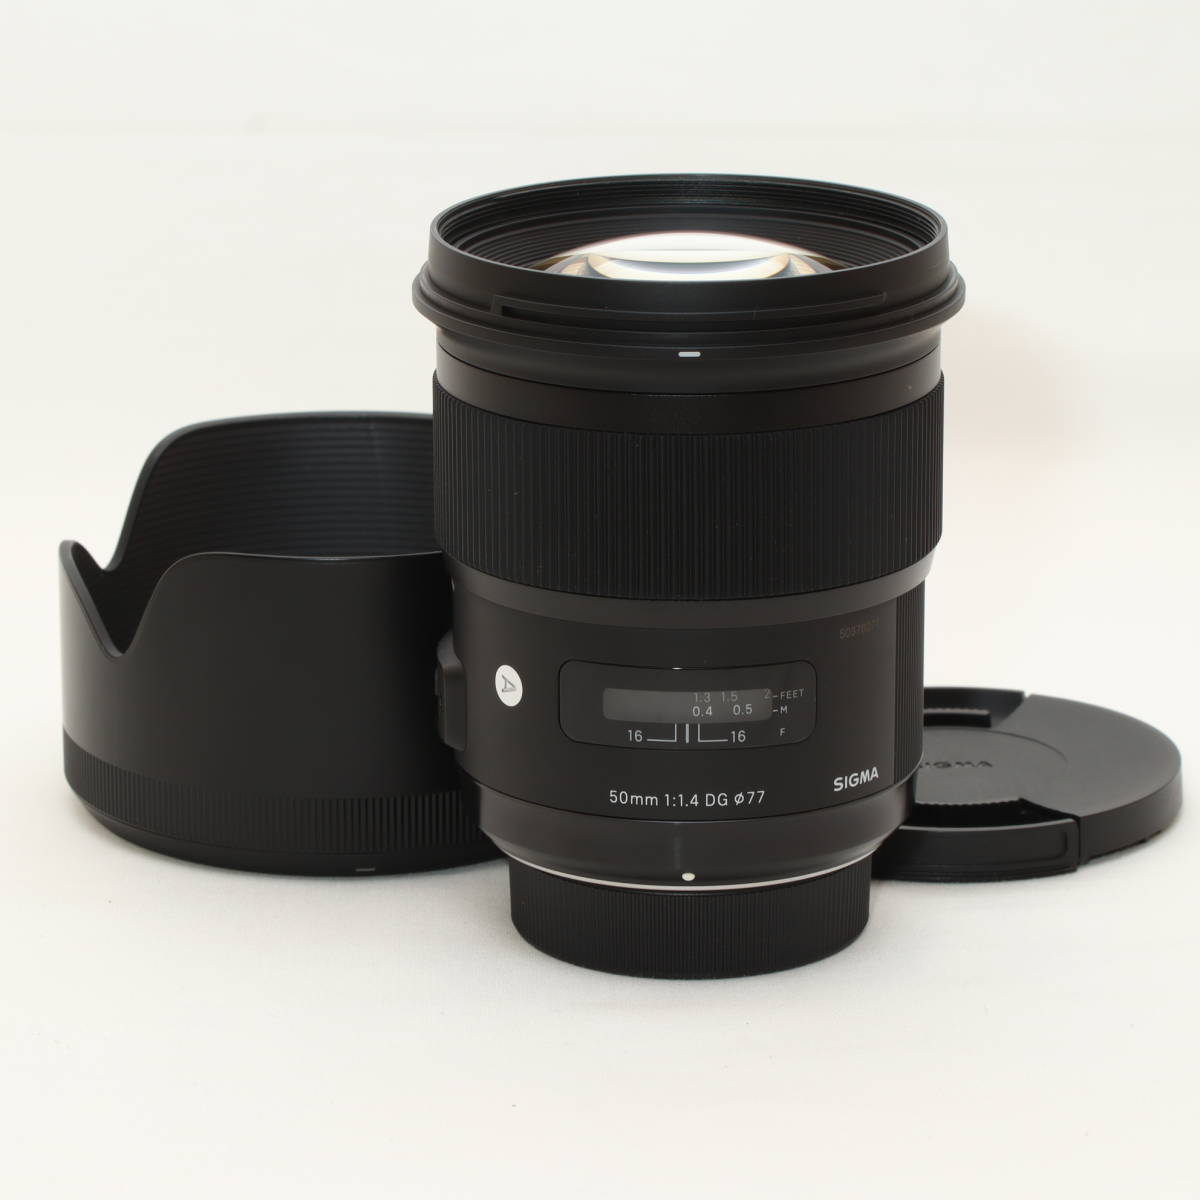 セール価格 SIGMA 単焦点標準レンズ Art 50mm F1.4 DG HSM ニコン用 フルサイズ対応 311551 